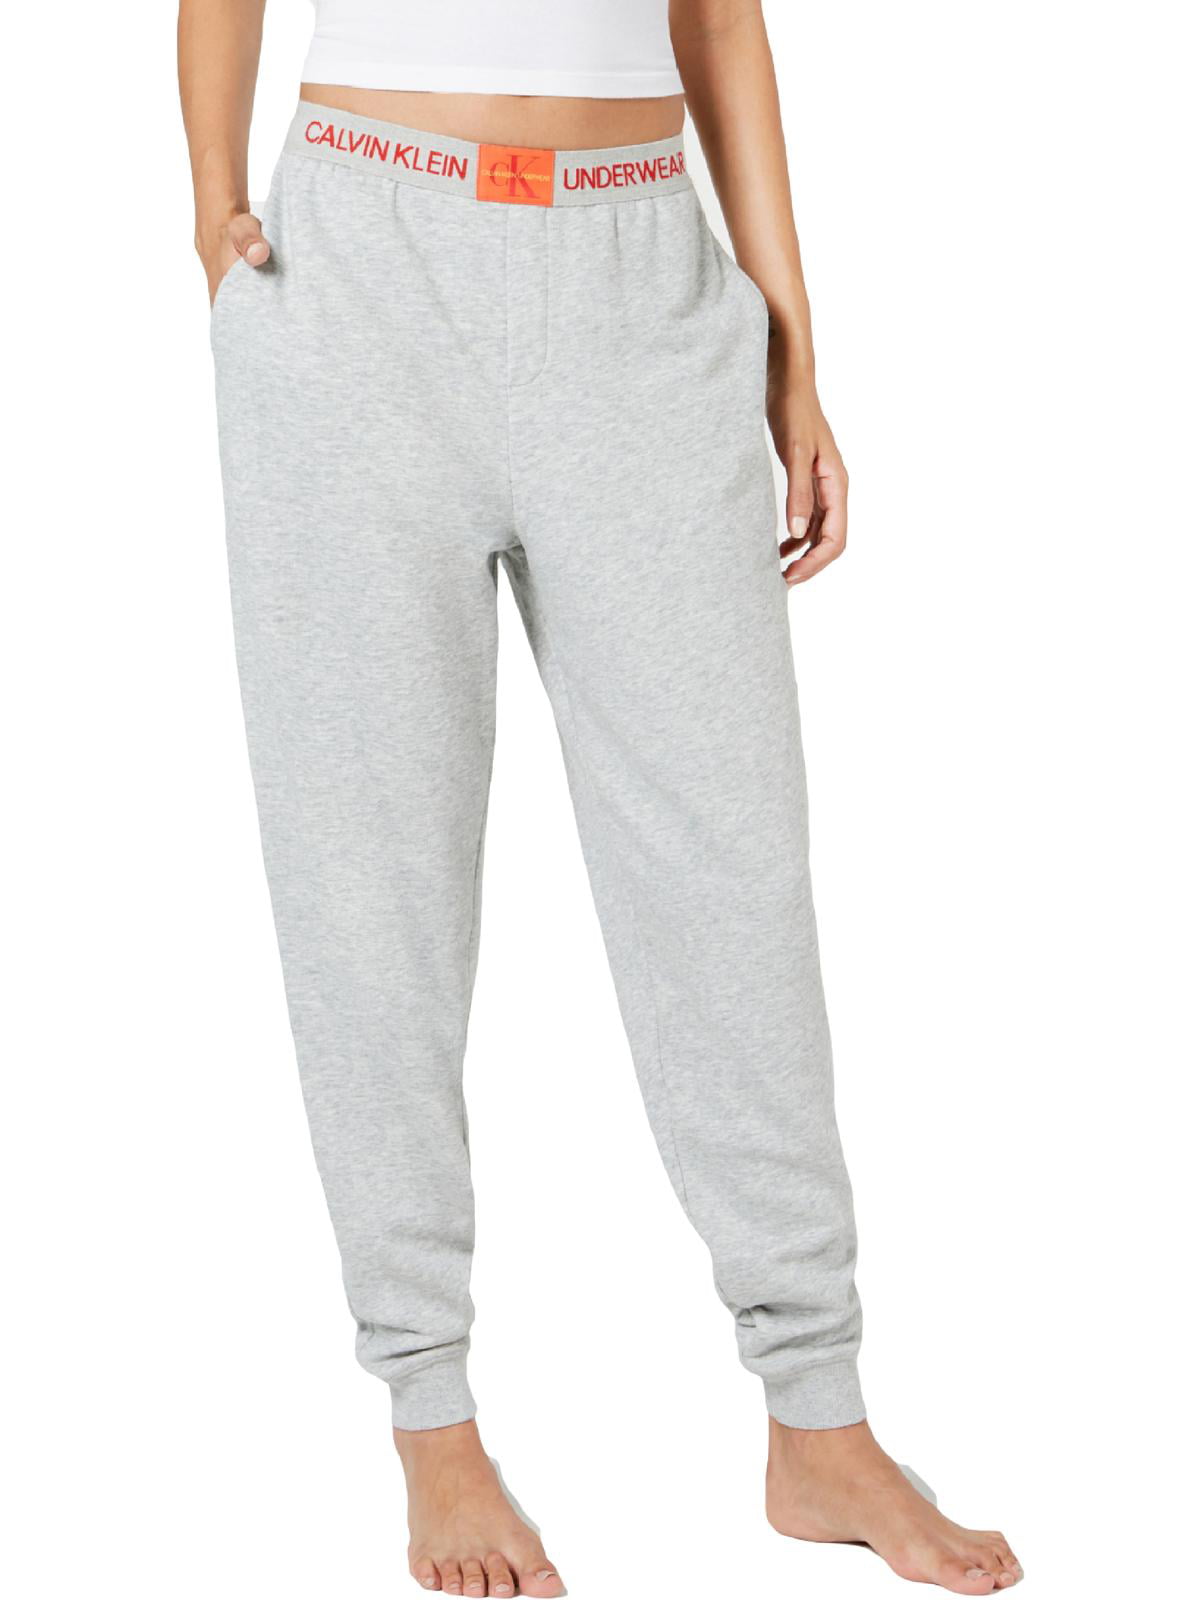 Calvin Klein Sleepwear Womens Nightwear Comfy Jogger Pants Gray S -  